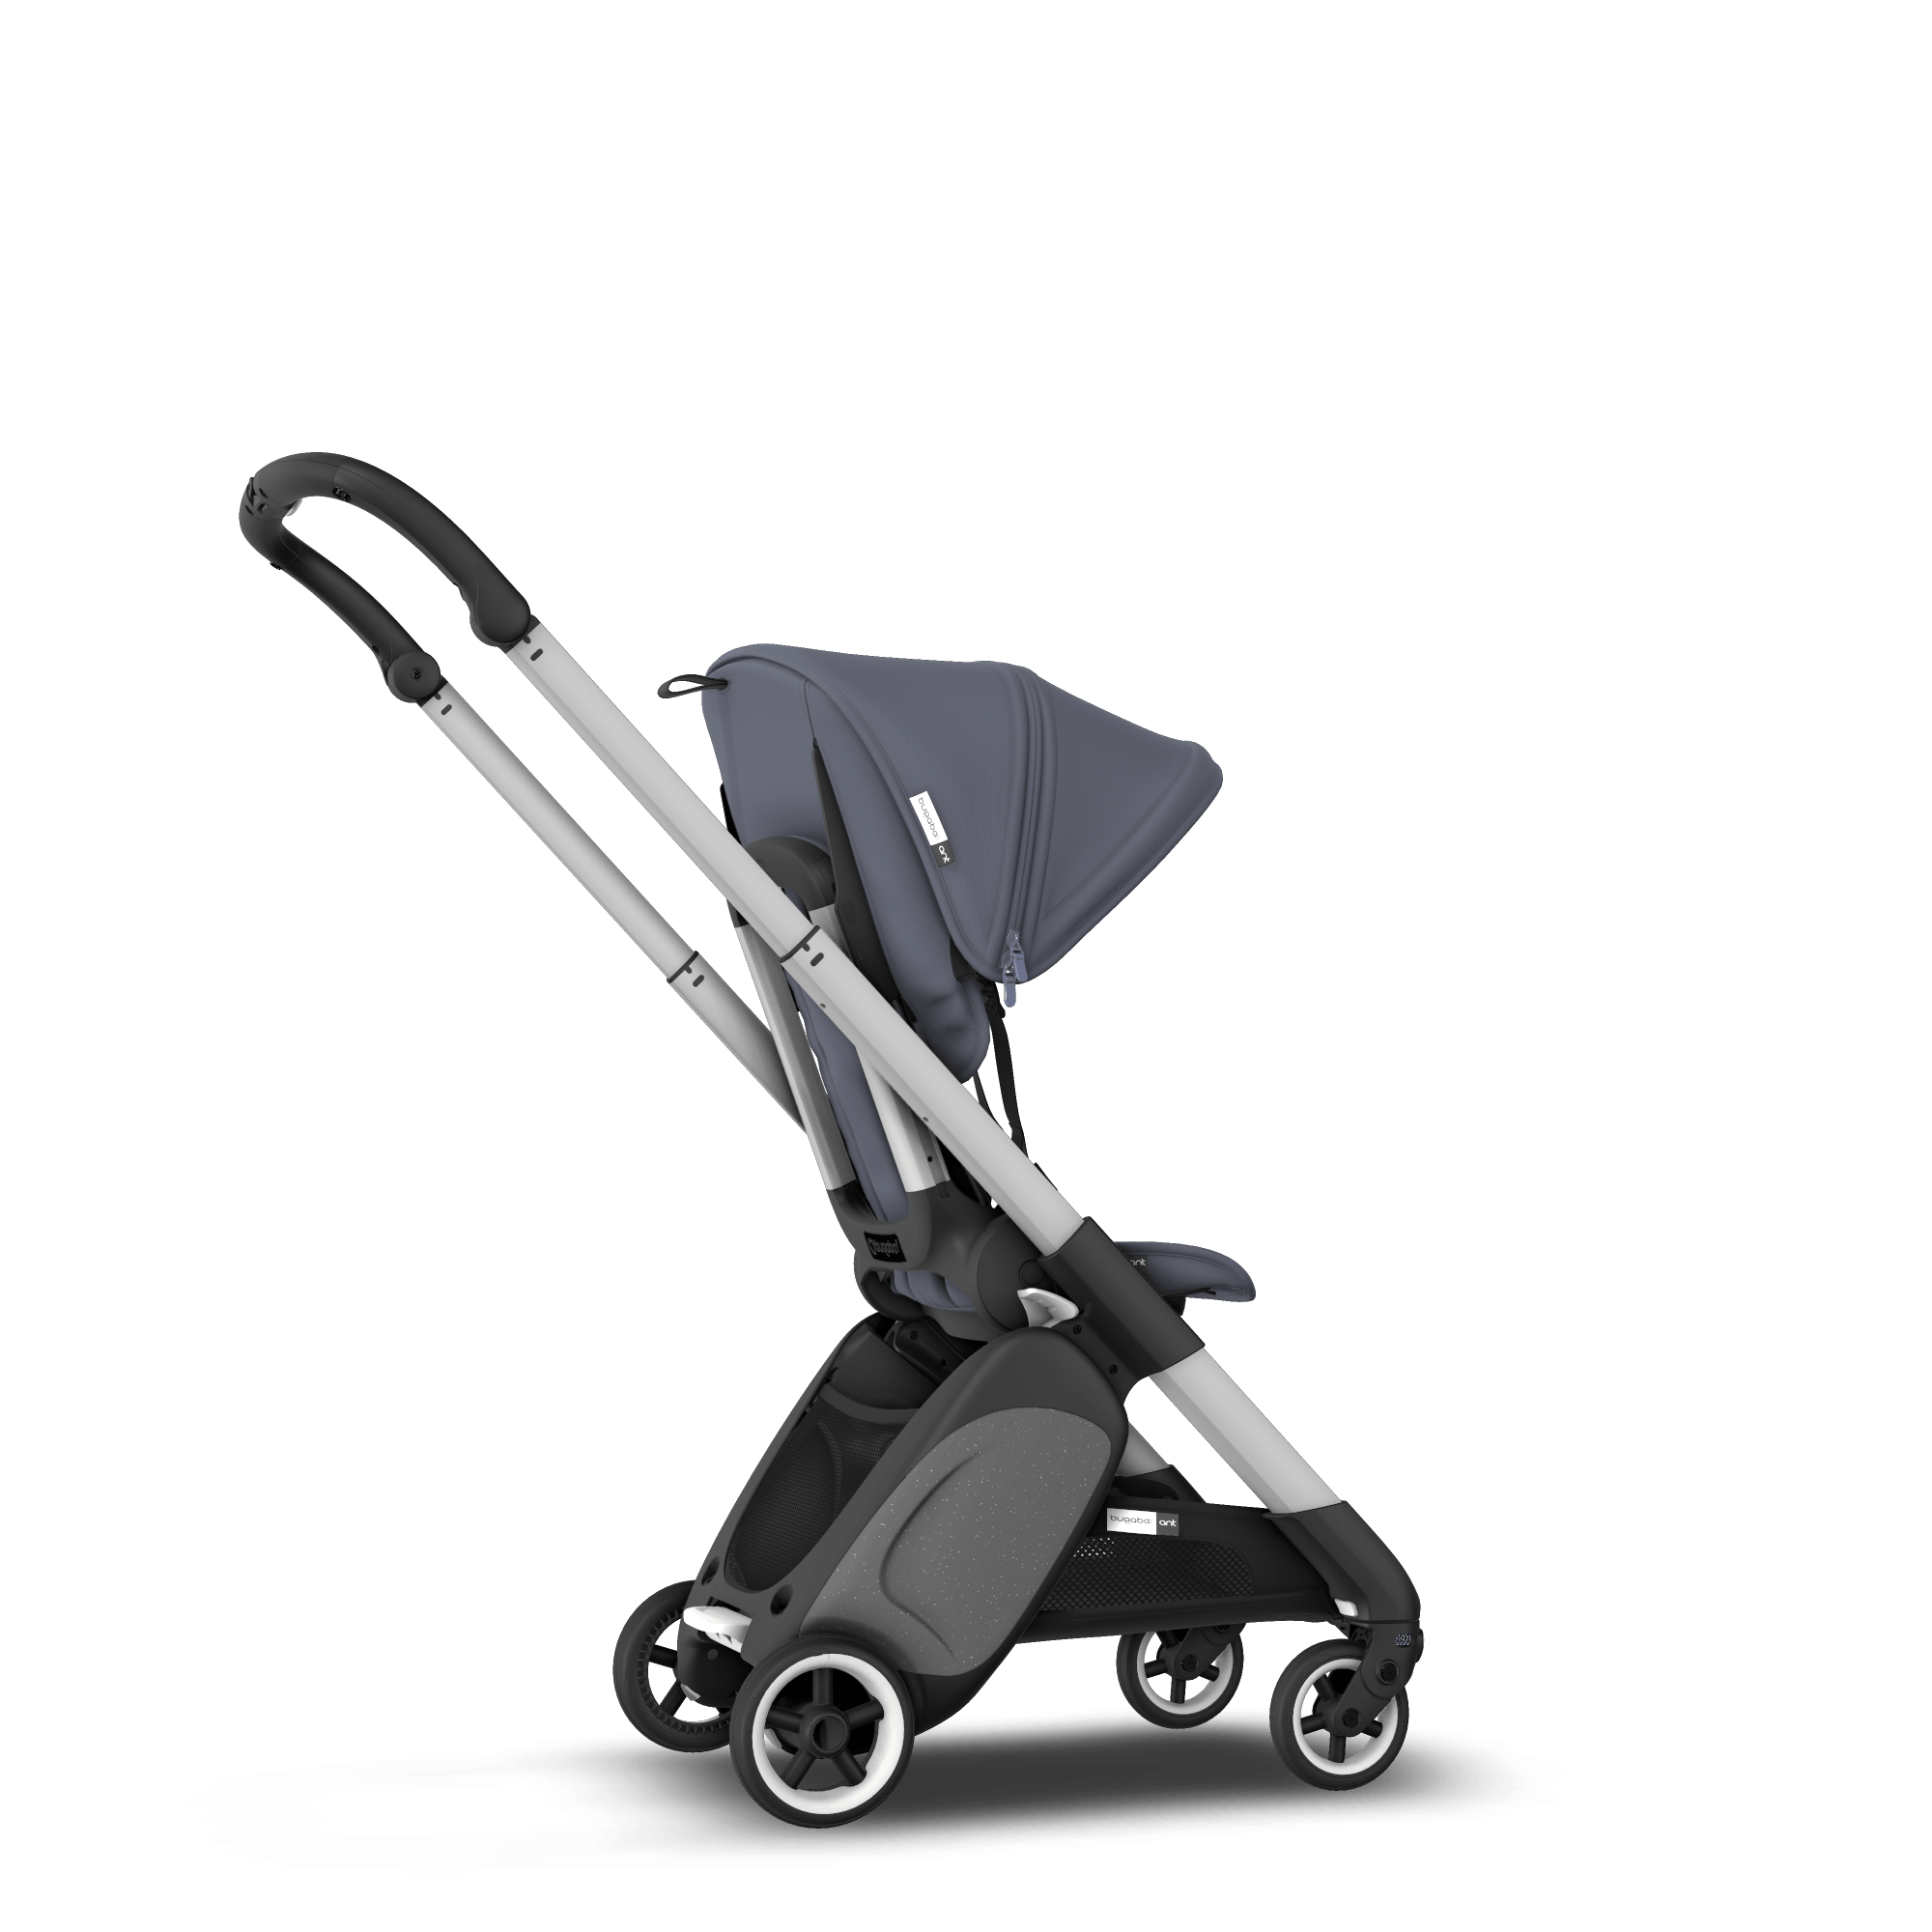 lightest stroller on the market